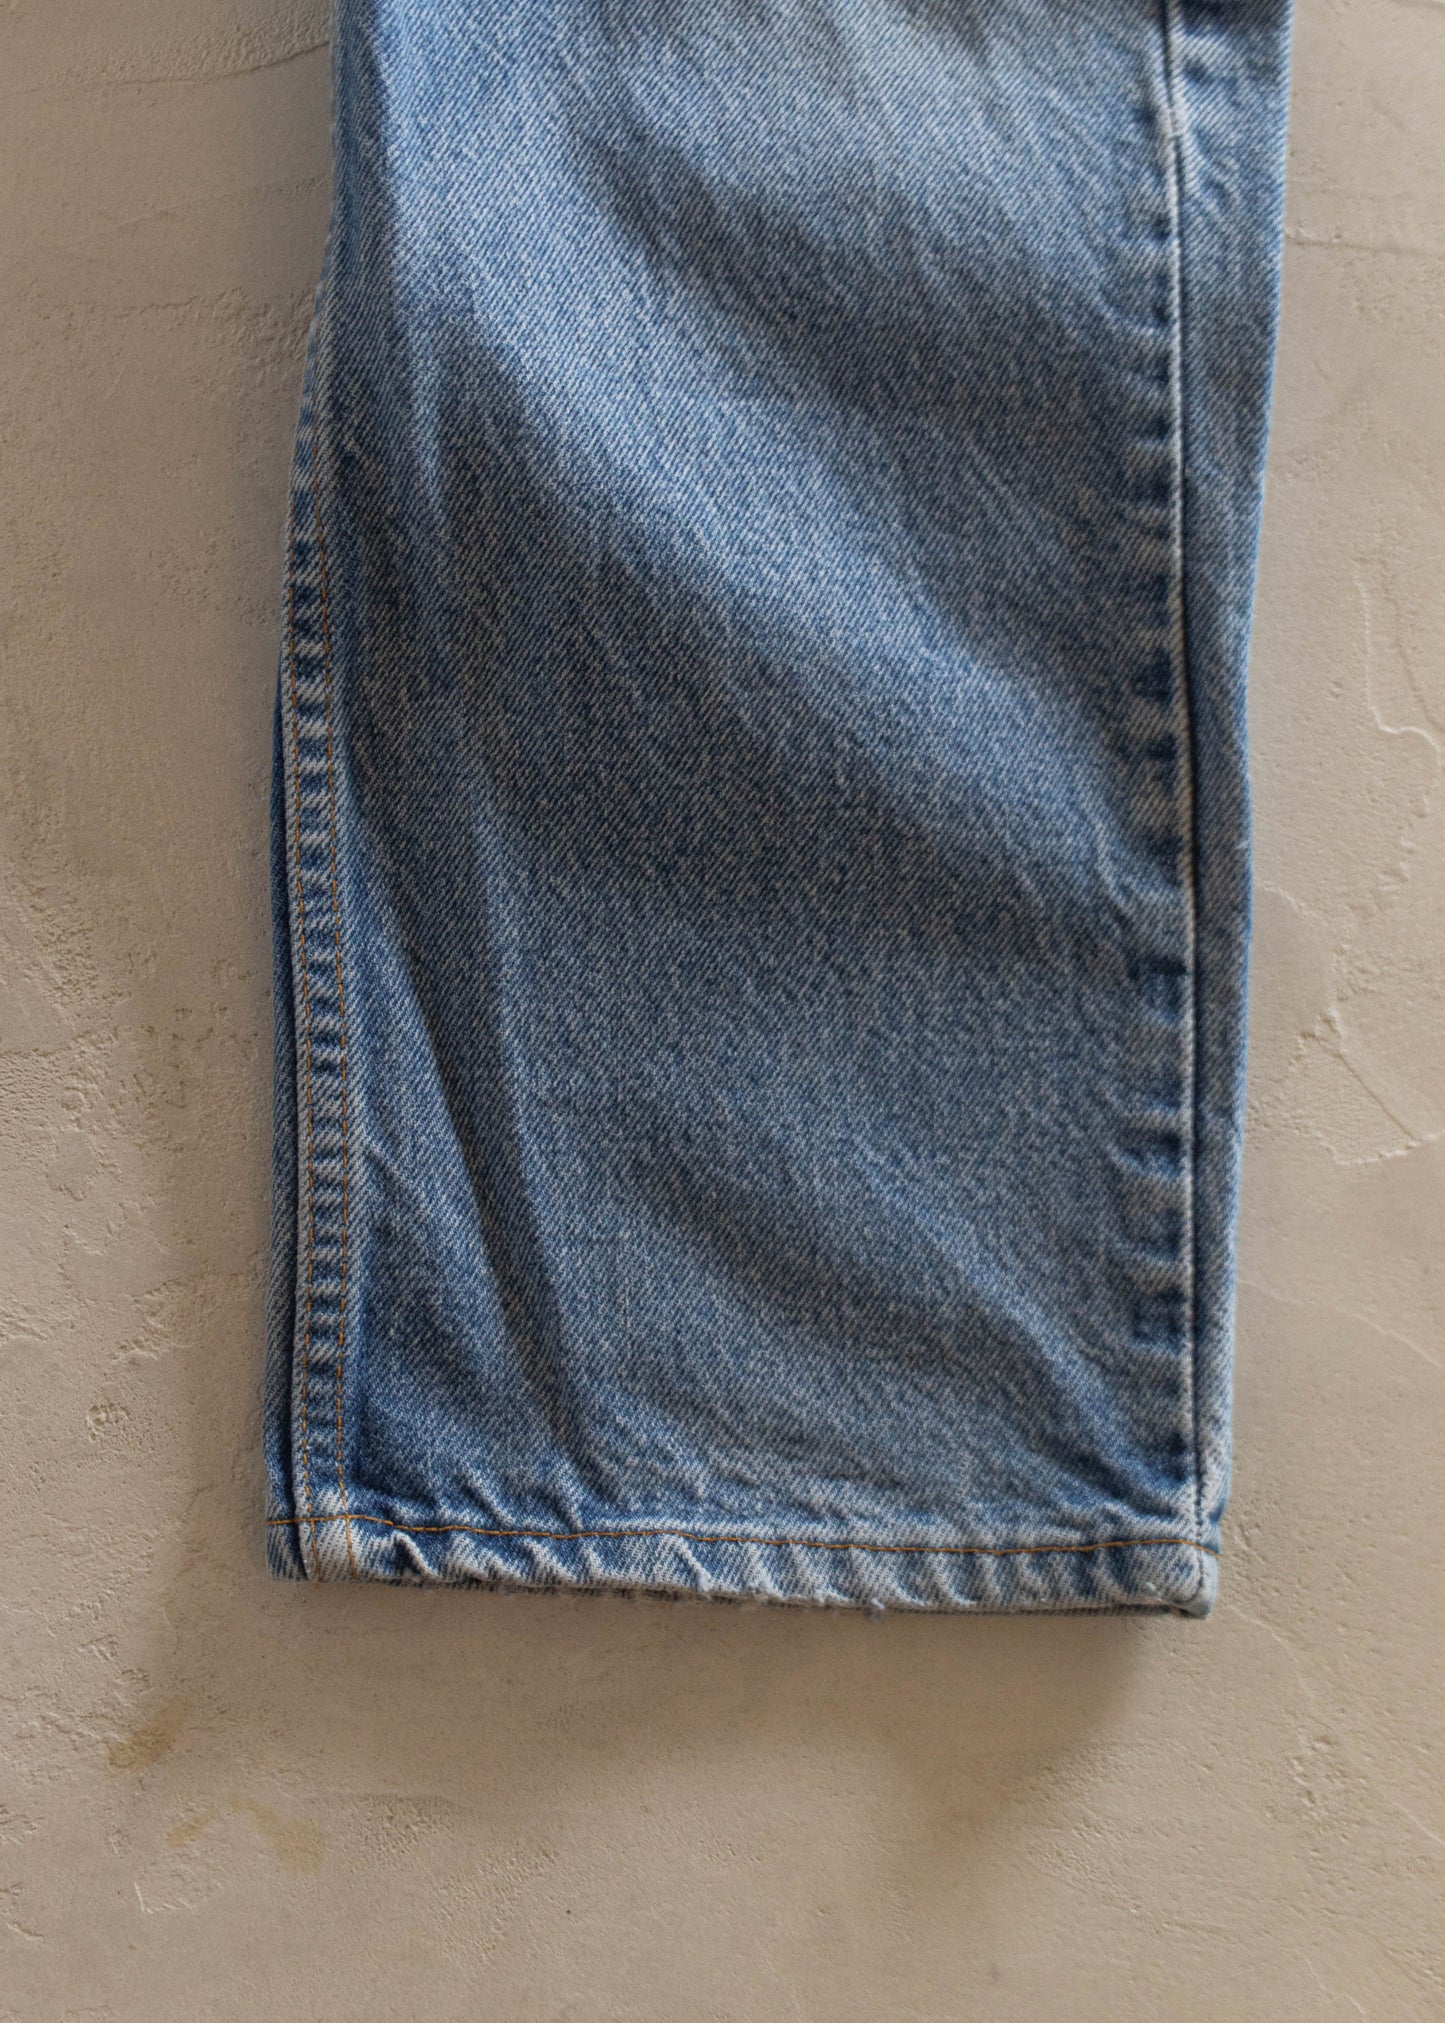 1980s Levi's 505 Midwash Jeans Size Women's 30 Men's 32